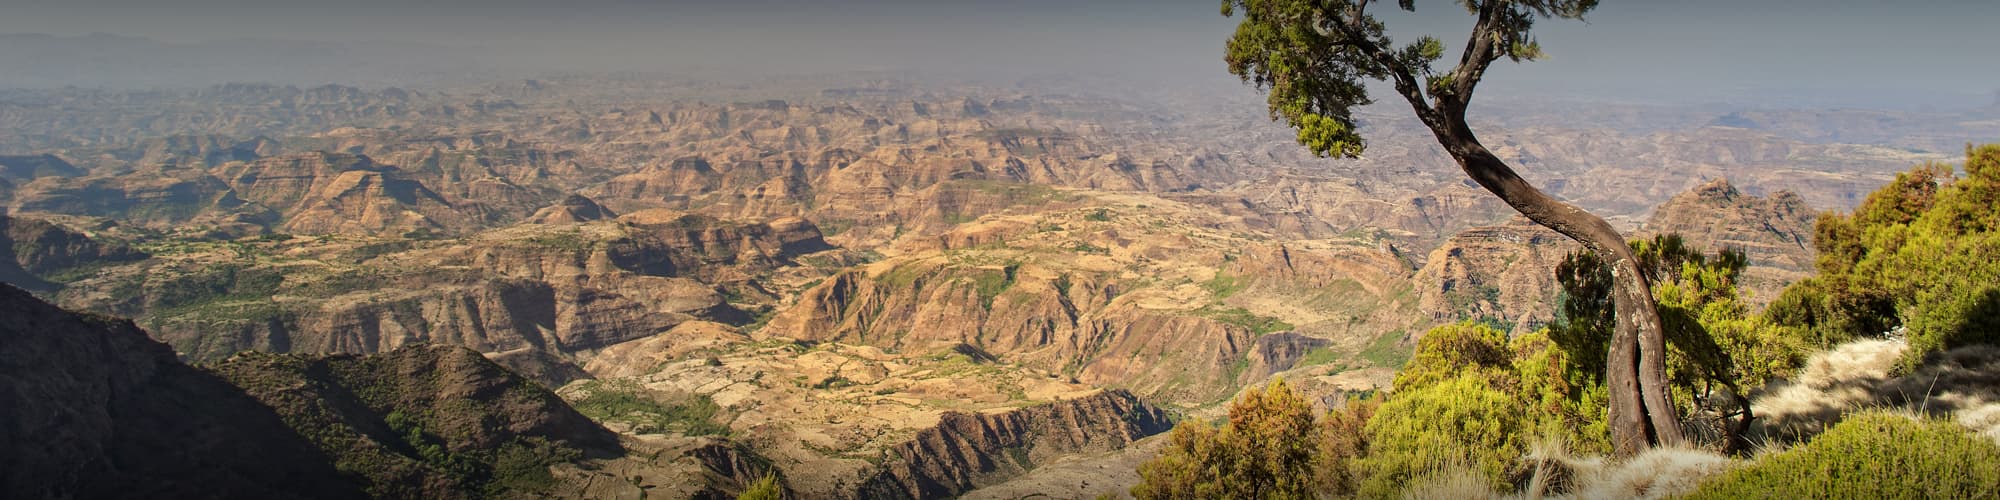 Découverte Ethiopie © Guenter Guni / iStock 